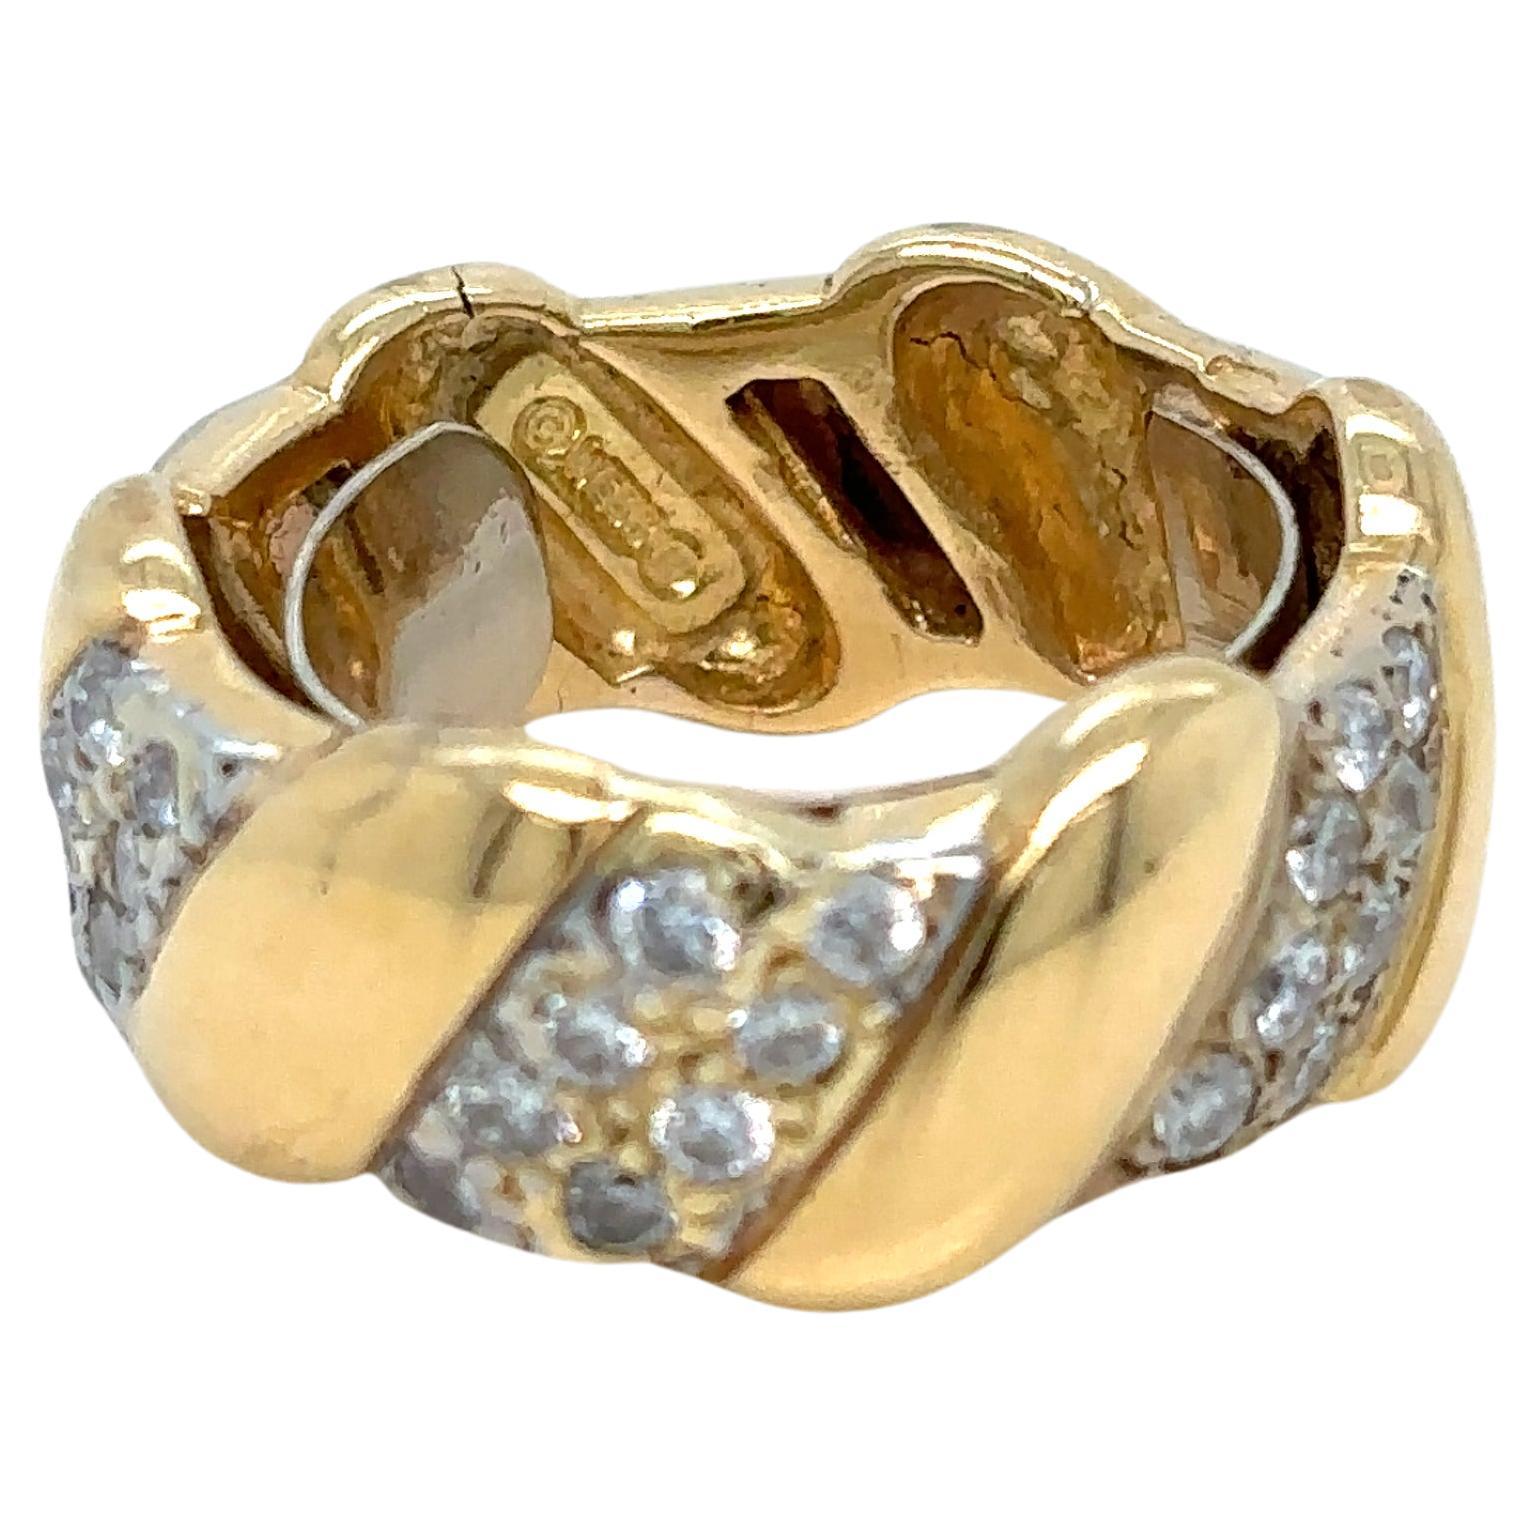 Bracelet vintage en or blanc et jaune de David Webb serti de trois rangées de diamants pave, total 1.20 carats G/H couleur Vs12. L'ensemble de la bague est en or 18 carats. 

Largeur : 0,9 cm
Taille 5/6

Excellent état, garantie d'authenticité à